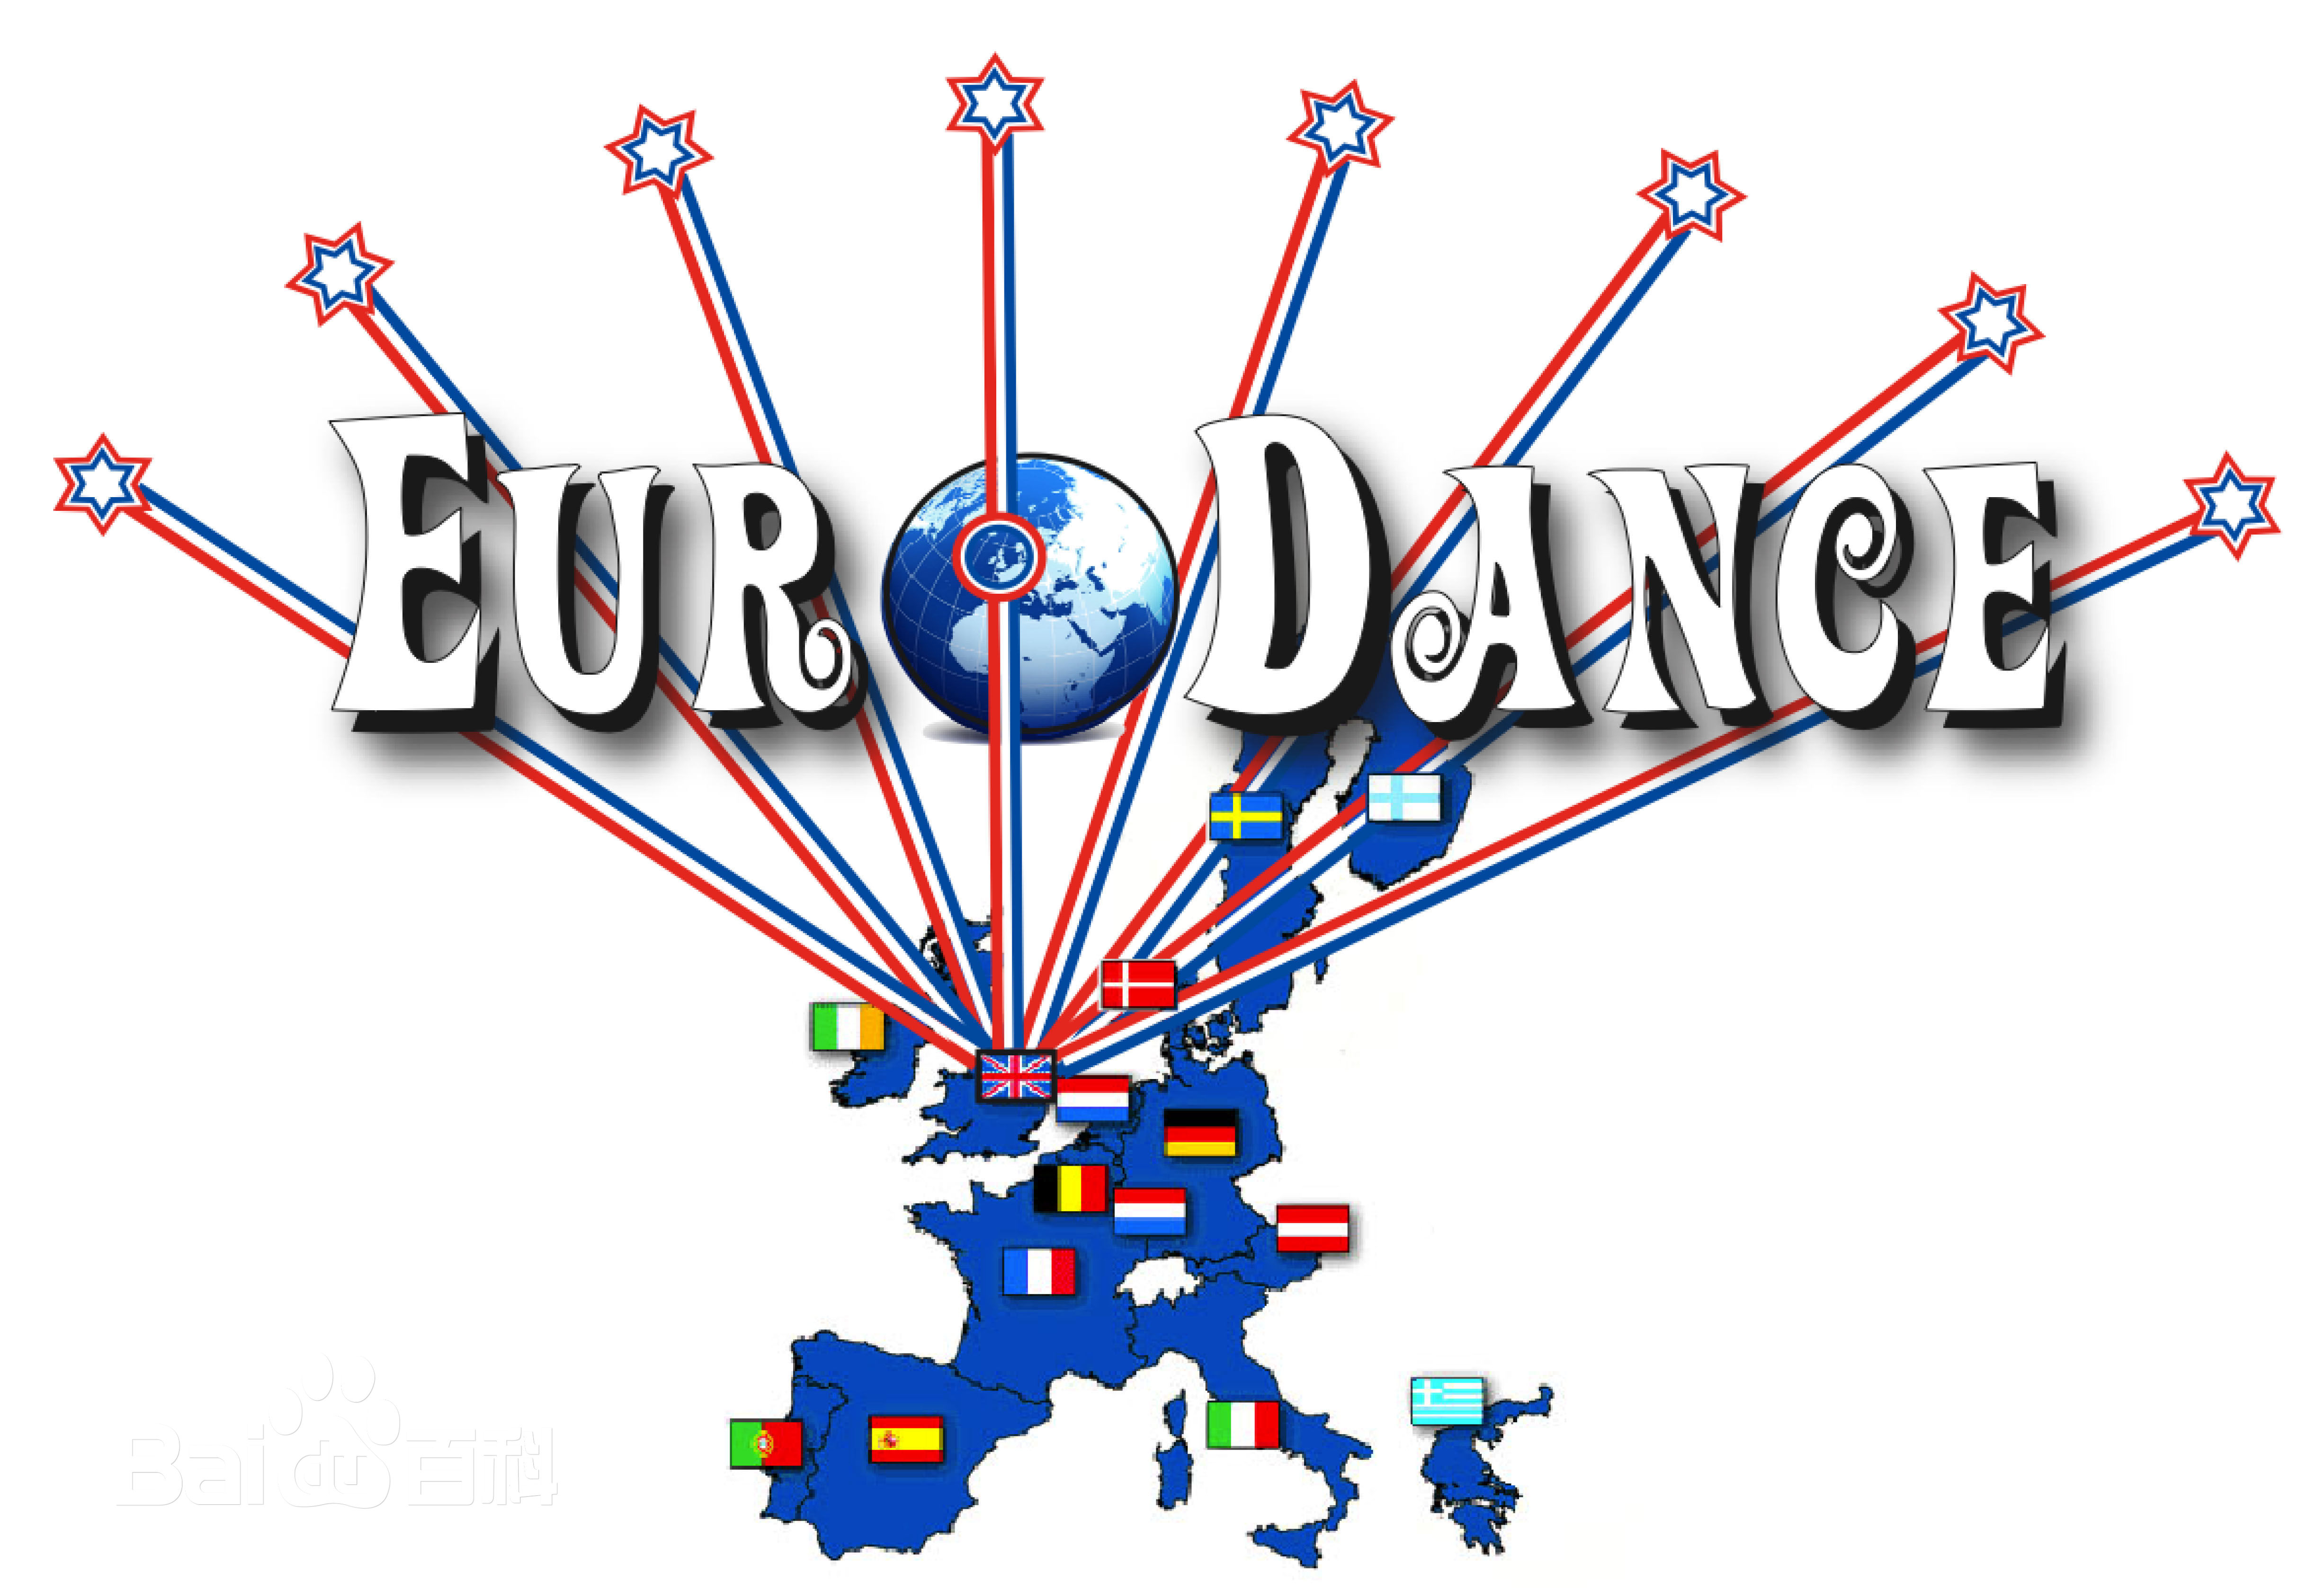 Eurodance